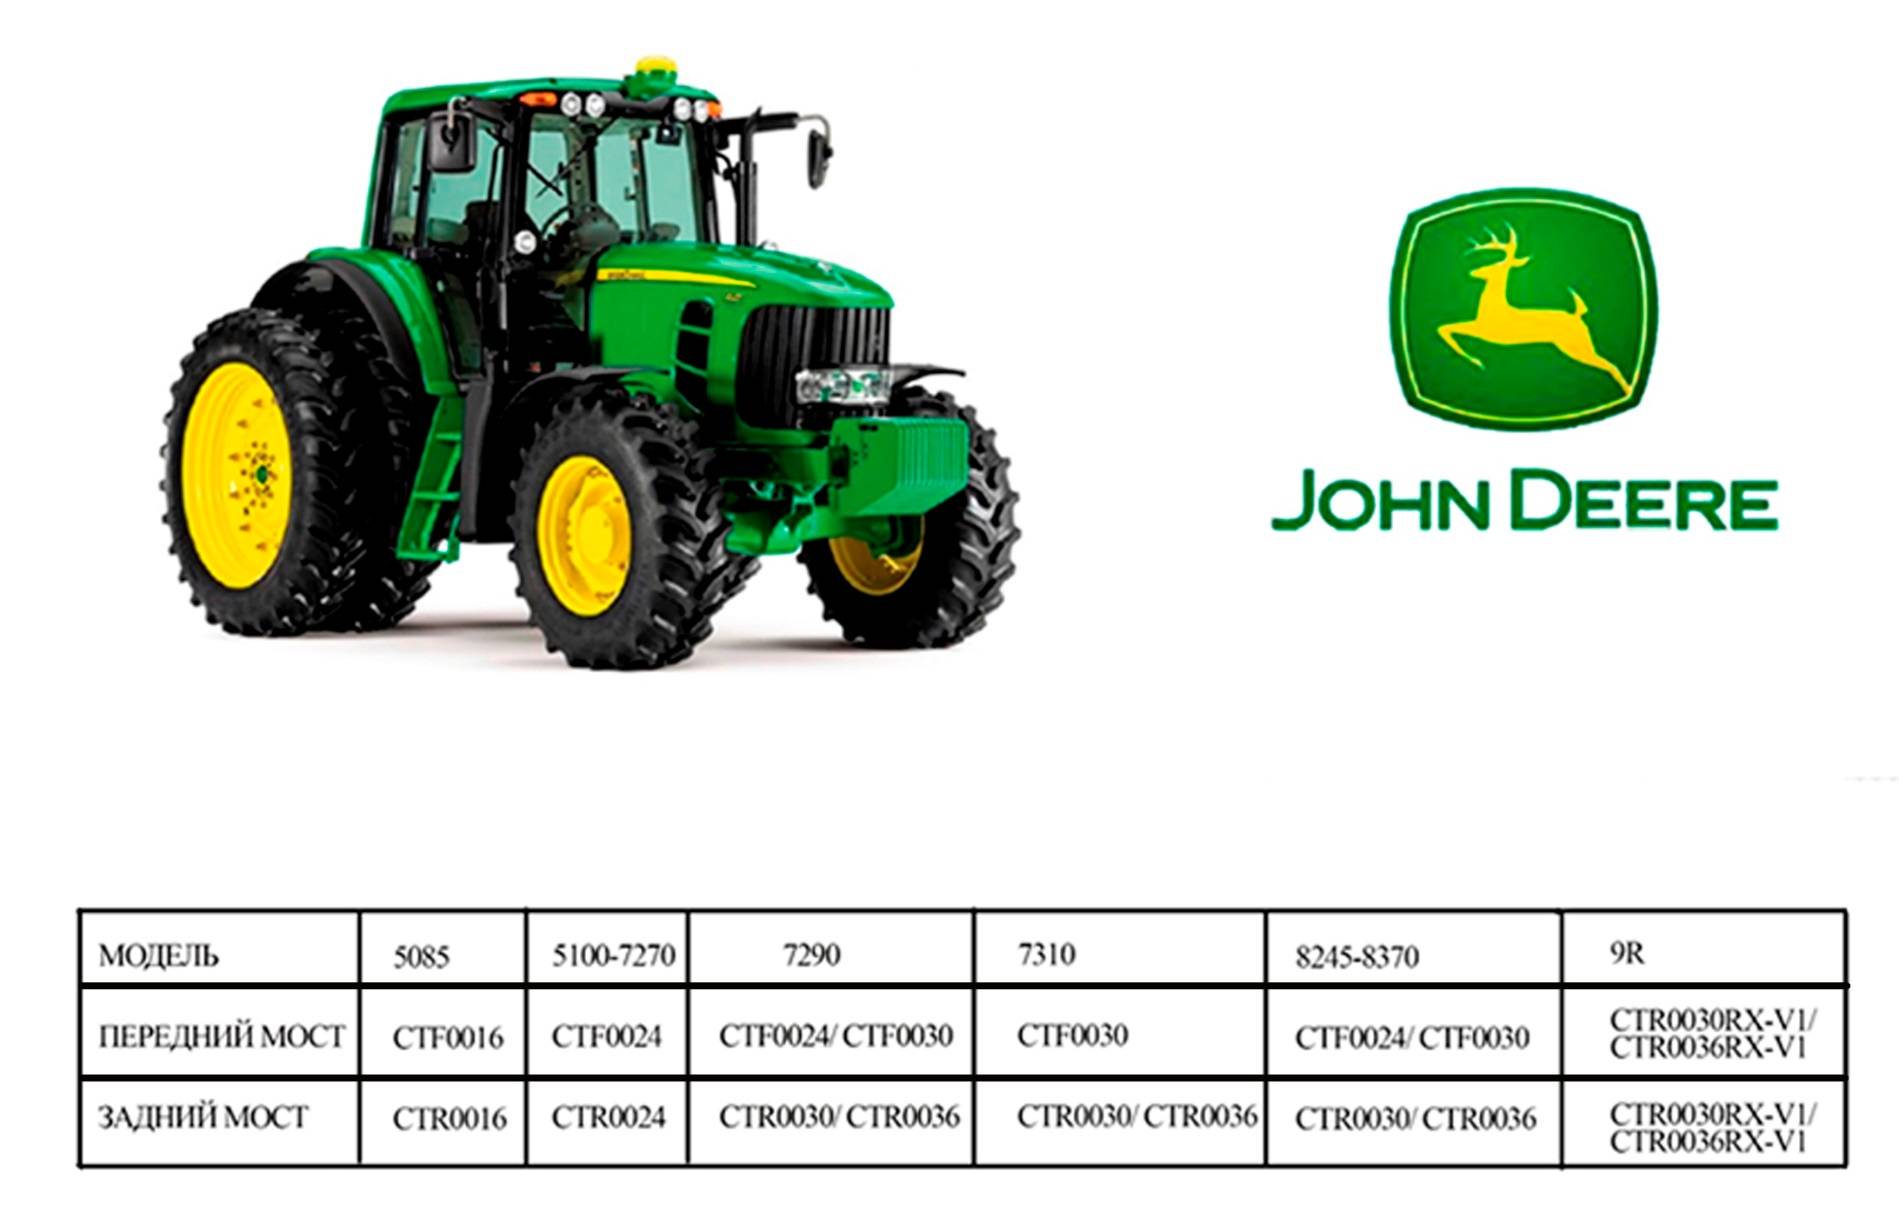 Тракторы john deere (джон дир) - обзор модельного ряда